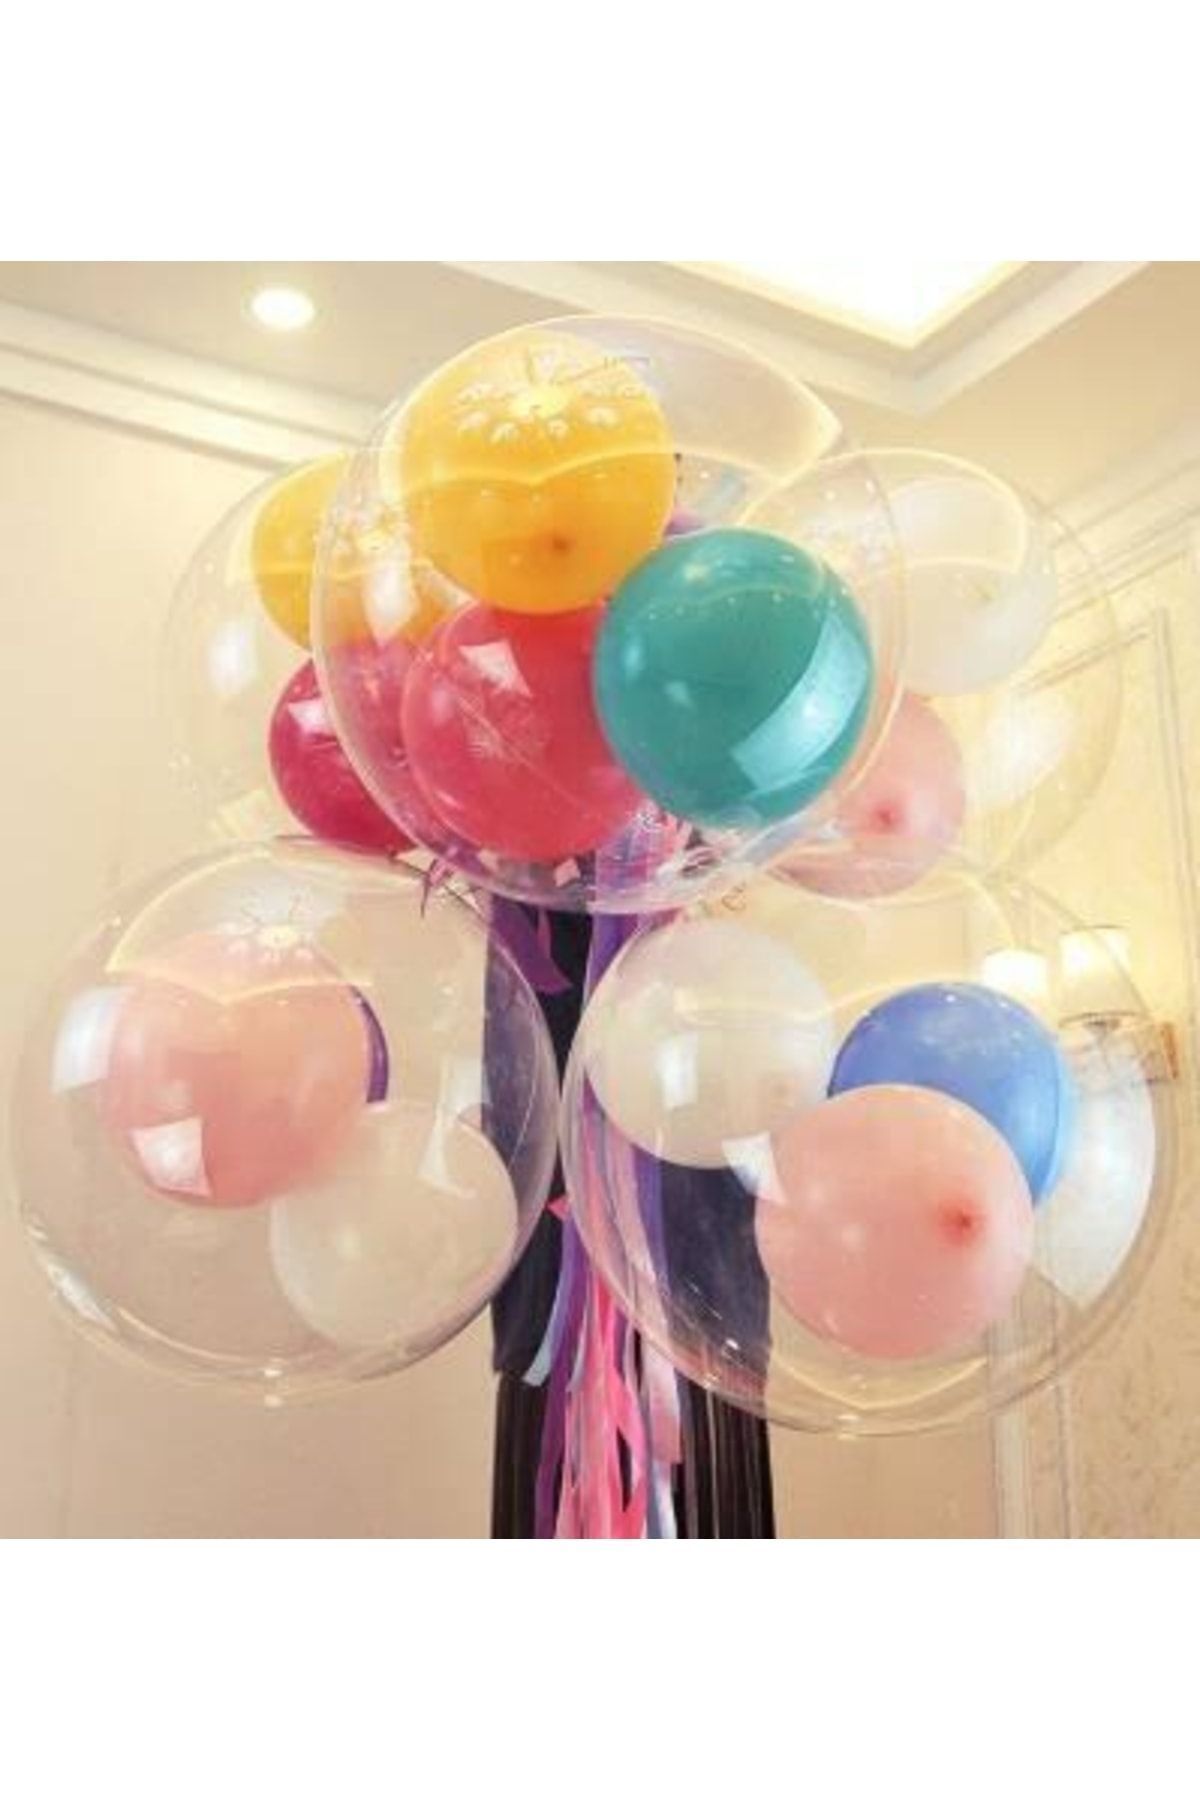 BALONBURADA Çok Amaçlı Şeffaf Bobo Balon-20 Inç Kalitelli Içerisine Balon-çiçek-oyuncak Konulabilen